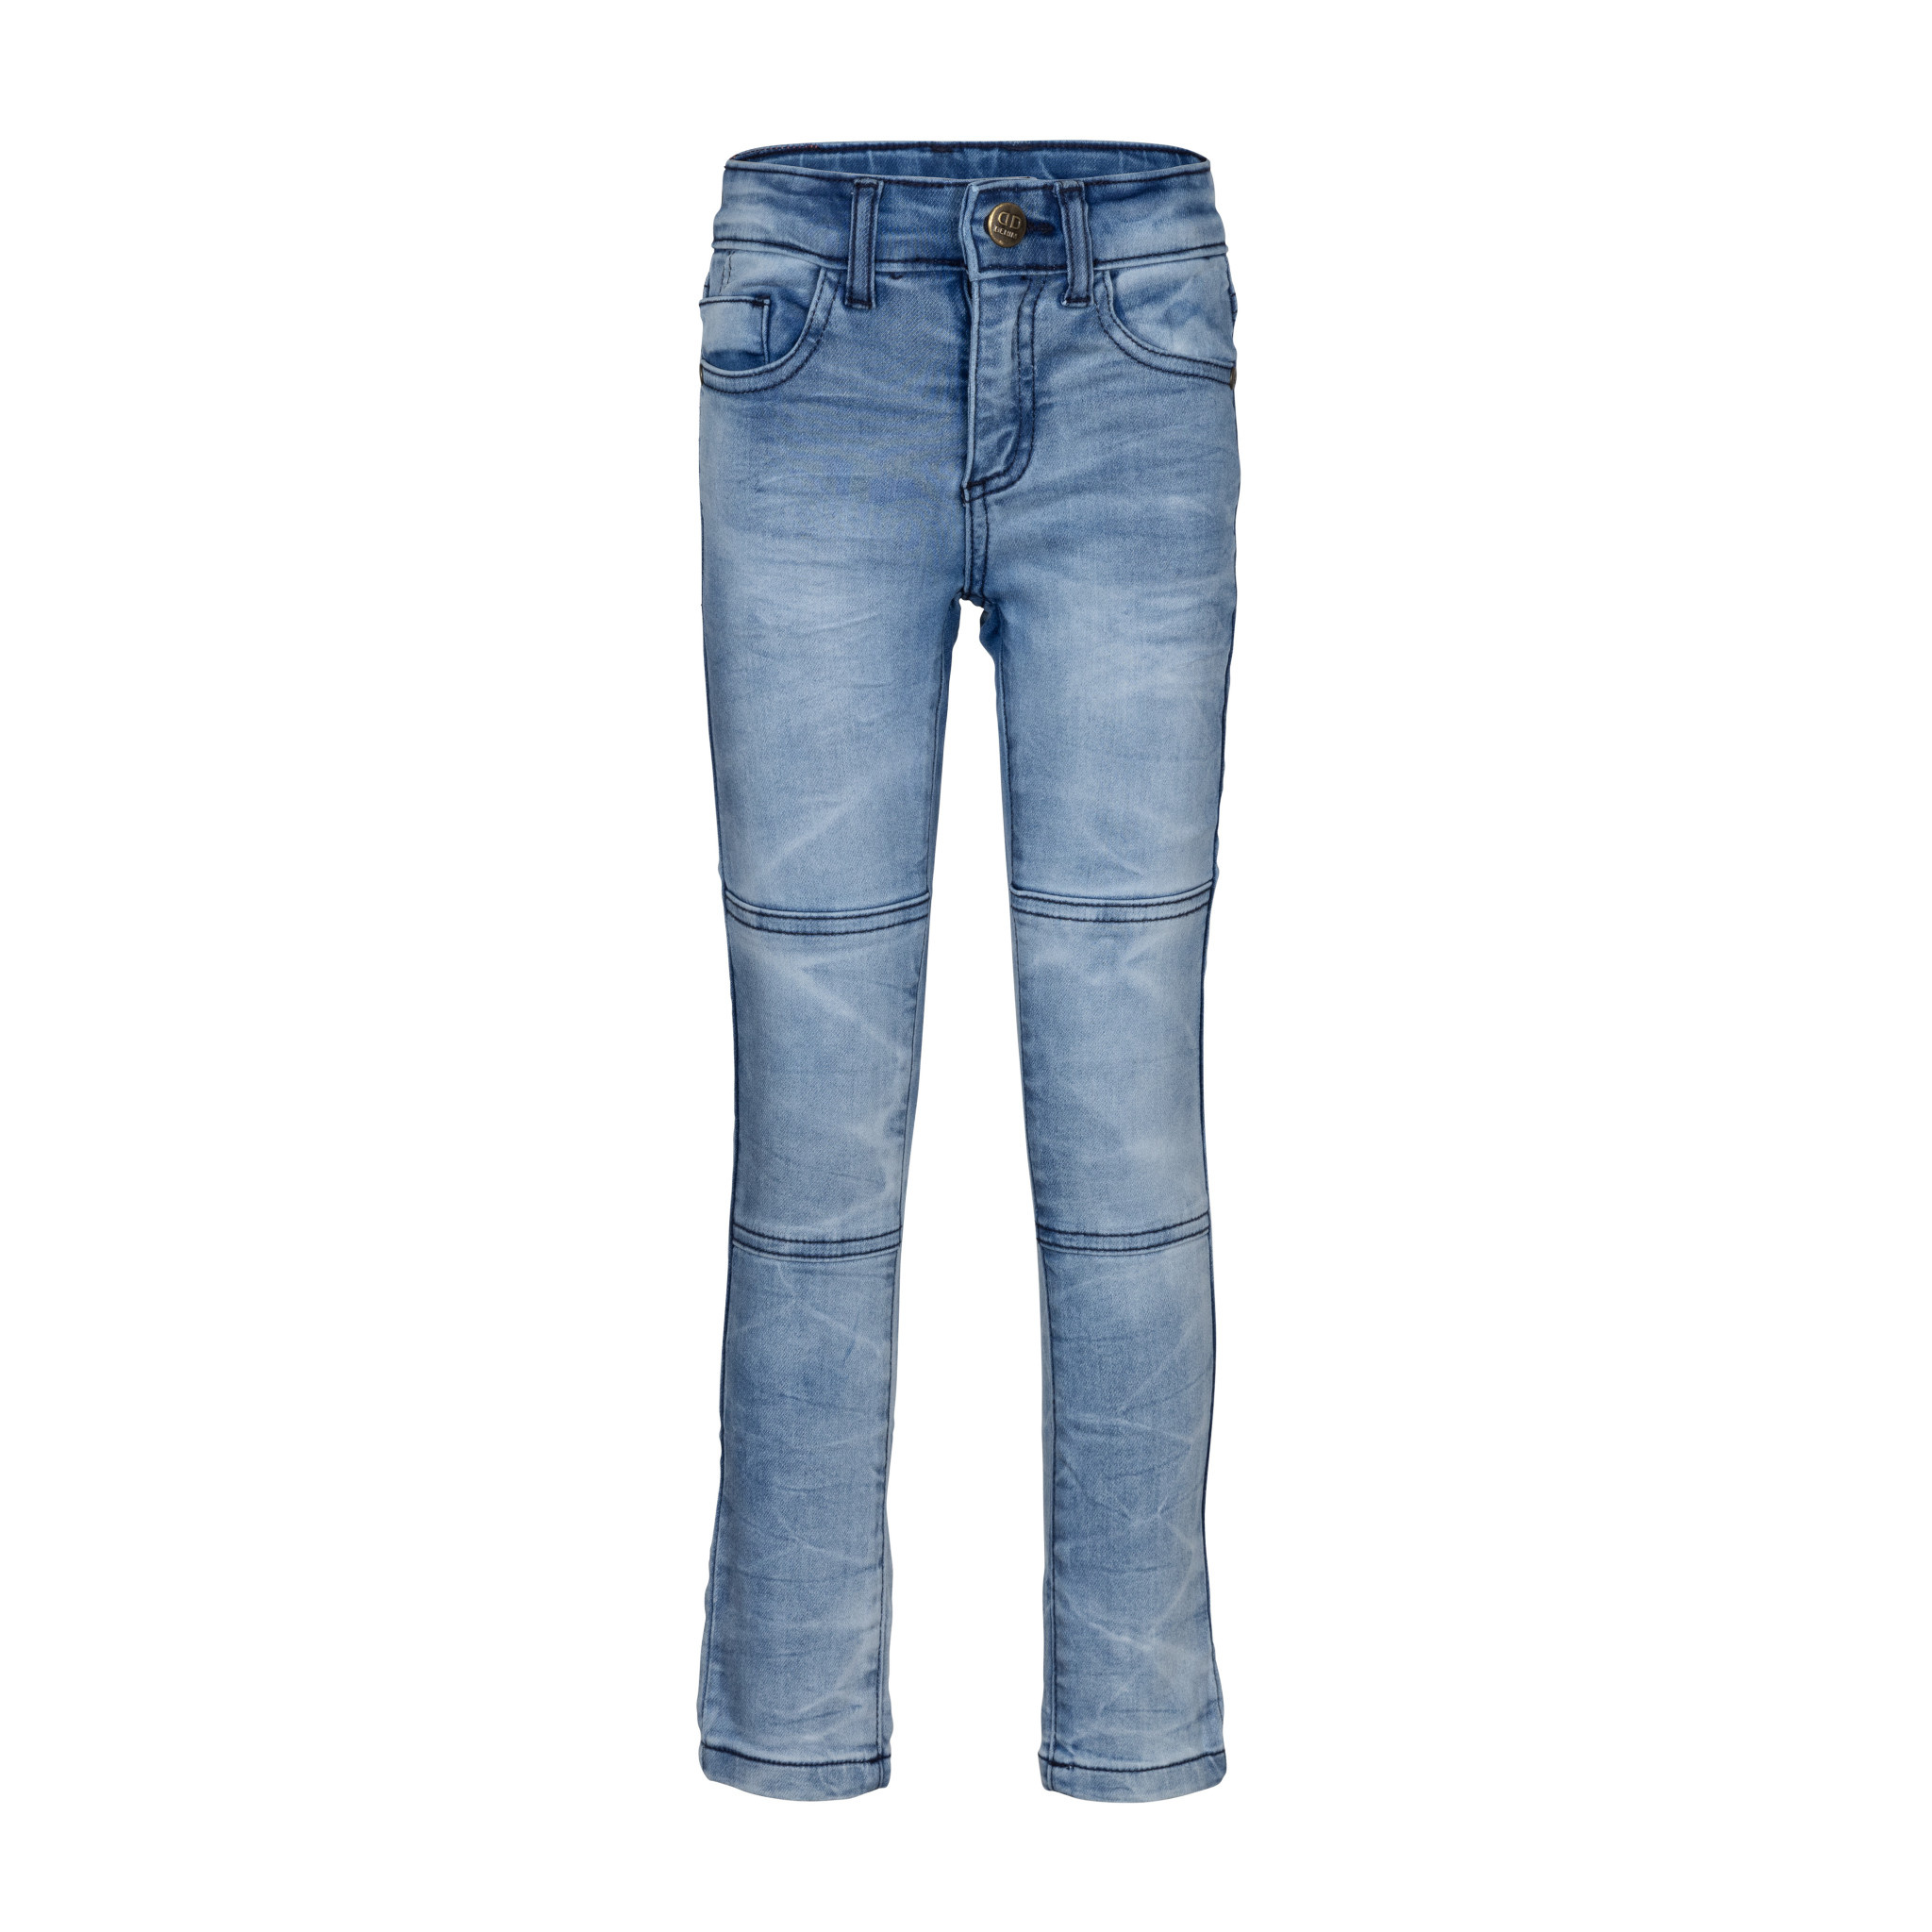 Afbeelding van Dutch Dream Denim Jongens jogg jeans kasuku mid blue